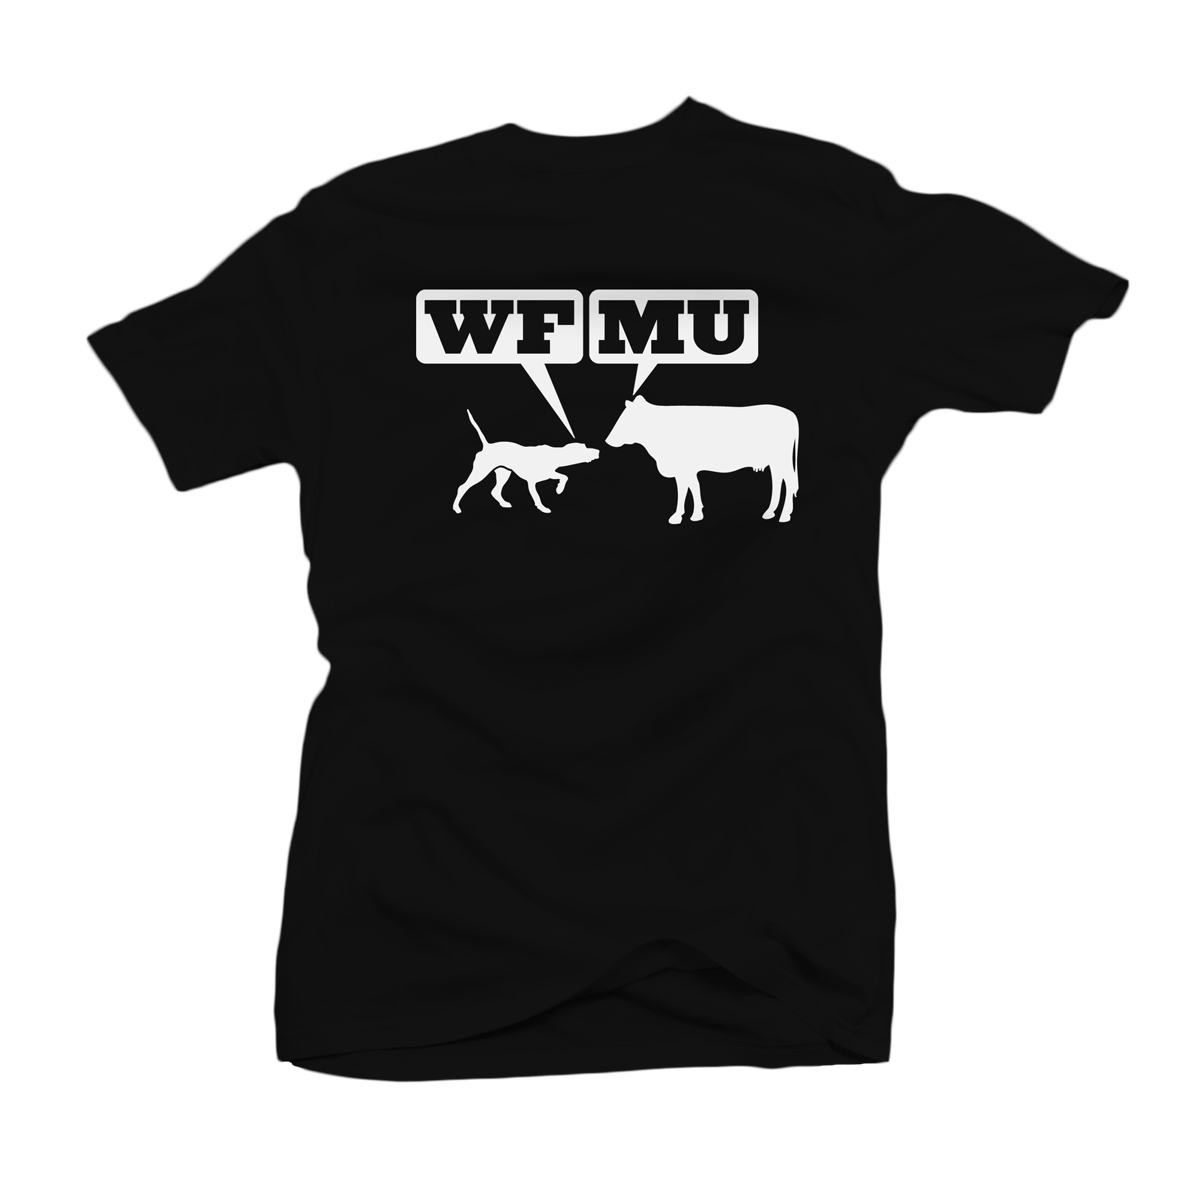 Woof-Moo White Logo on Black T-Shirt (Youth 6/7)